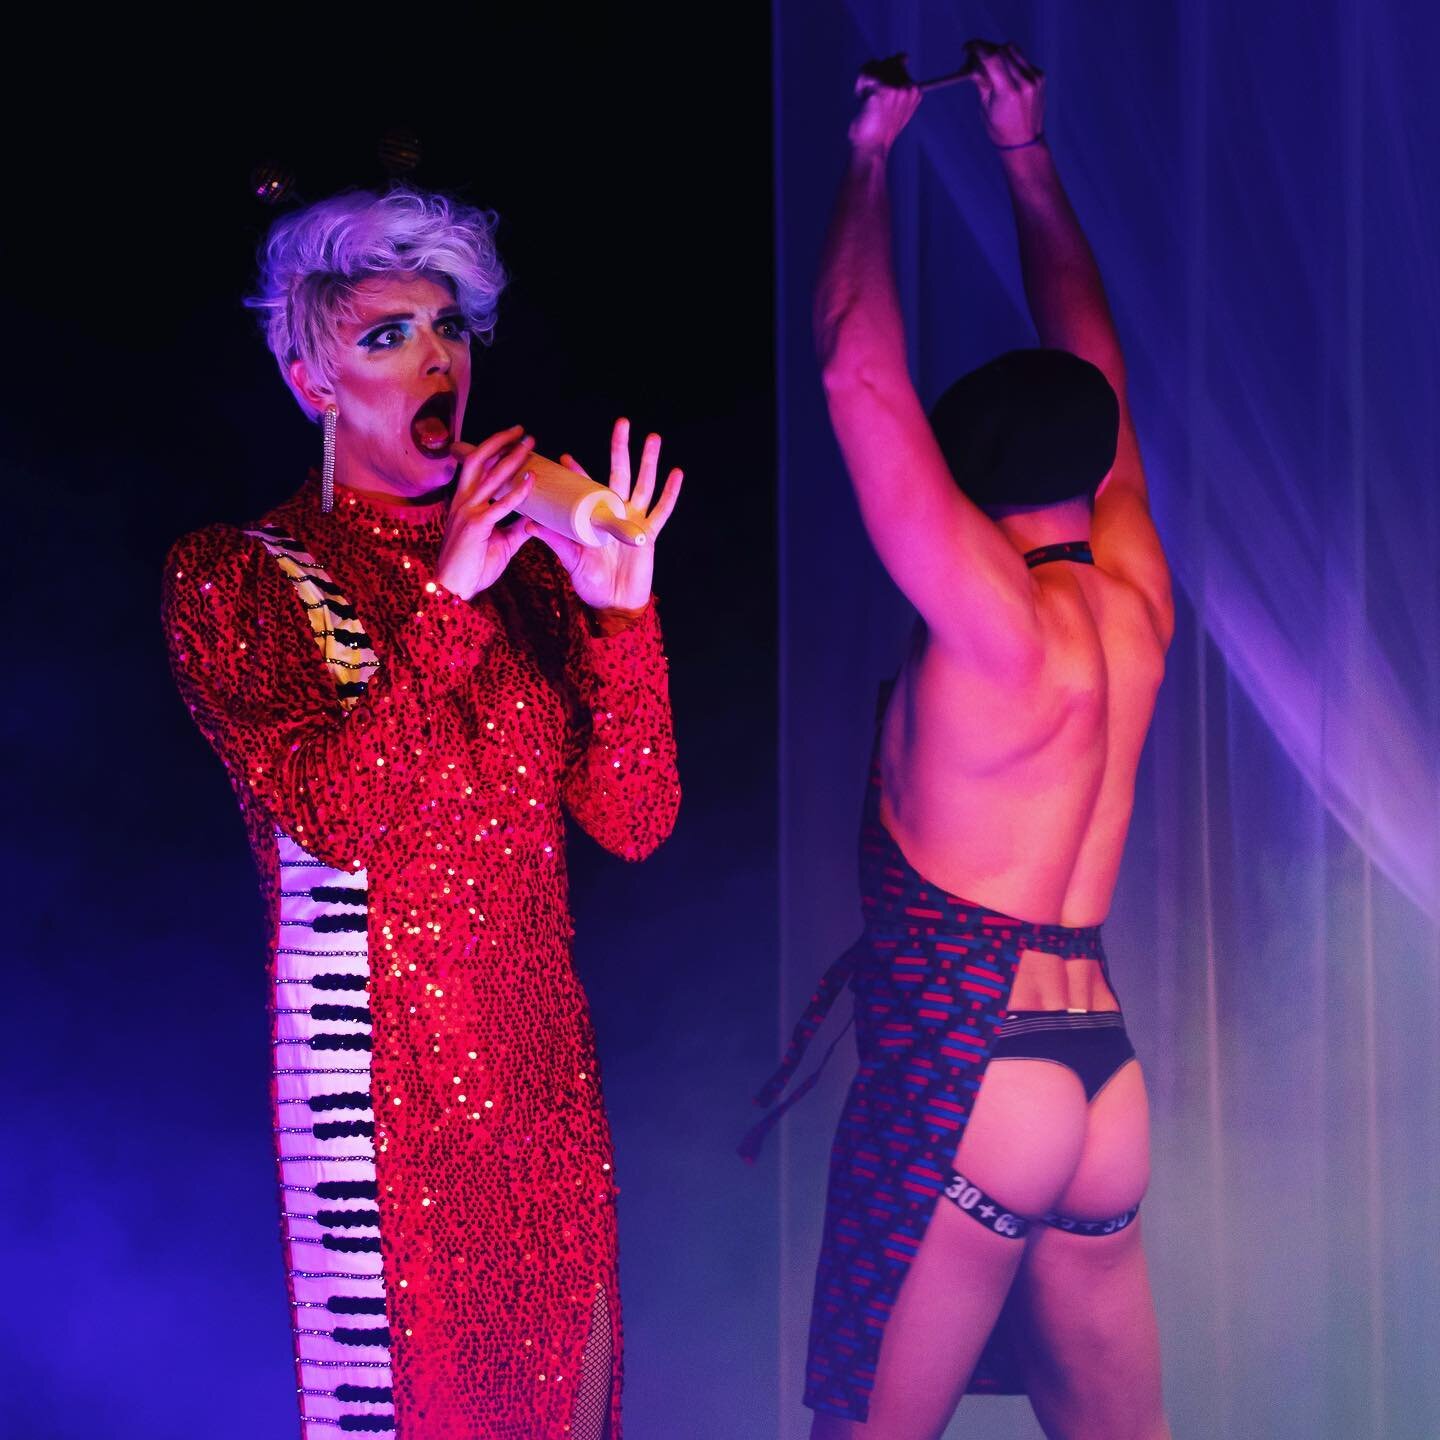 Morgen wird es heiss!
27.09. 20:00 Uhr Bad Godesberg
#irmajungunddagmardangereux mit ihrer Show #derwindhatmirkeinliederzählt im @kleinestheaterbg 
#gaynrw #gaycologne #gaybonn #drag #dragshow #dragnrw #travestie #travestieàlacarte #sexyass #naked 